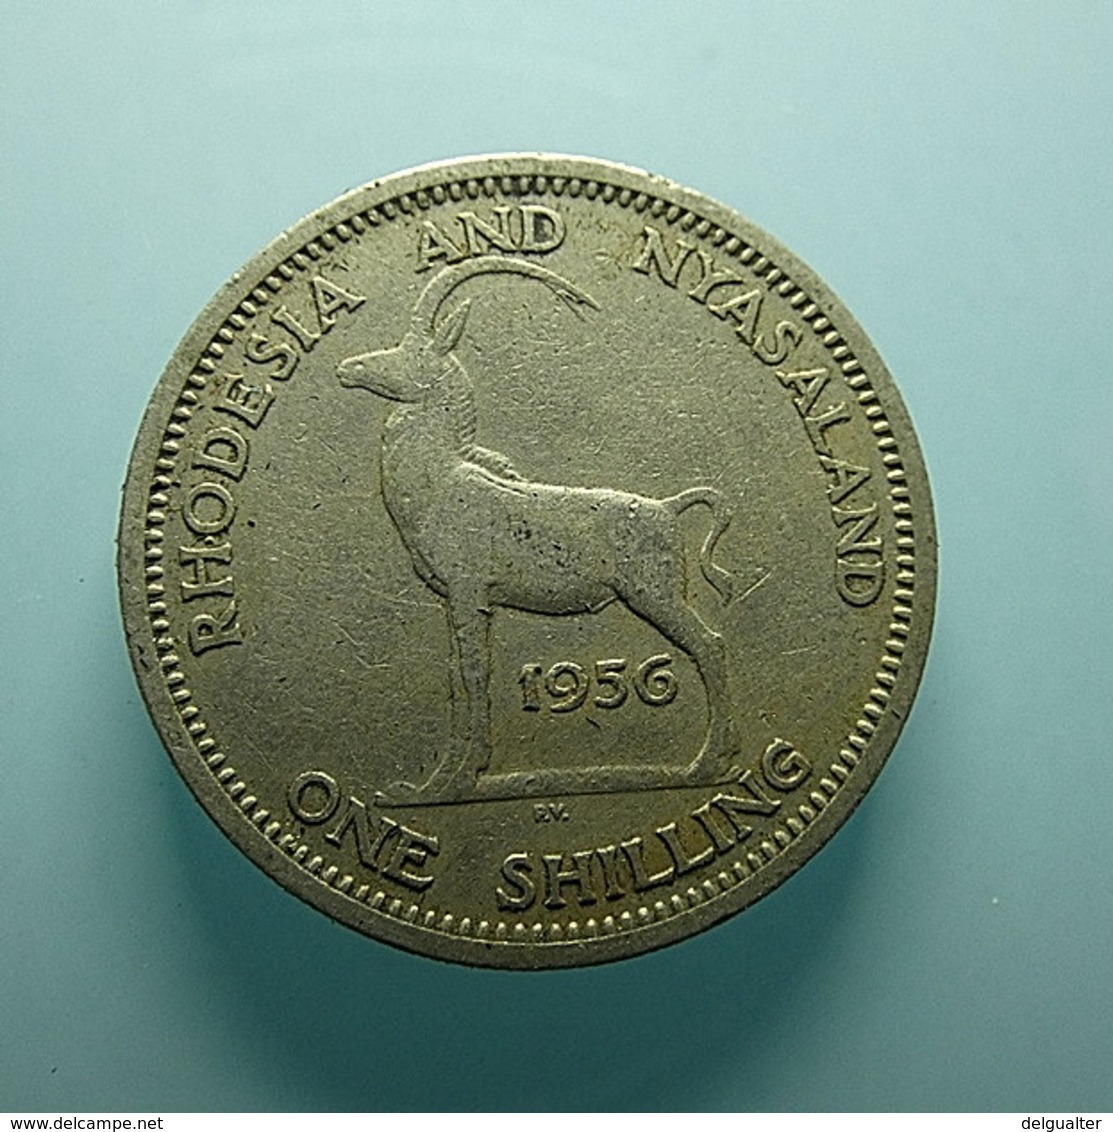 Rhodesia And Nyasaland 1 Shilling 1956 - Rhodesia